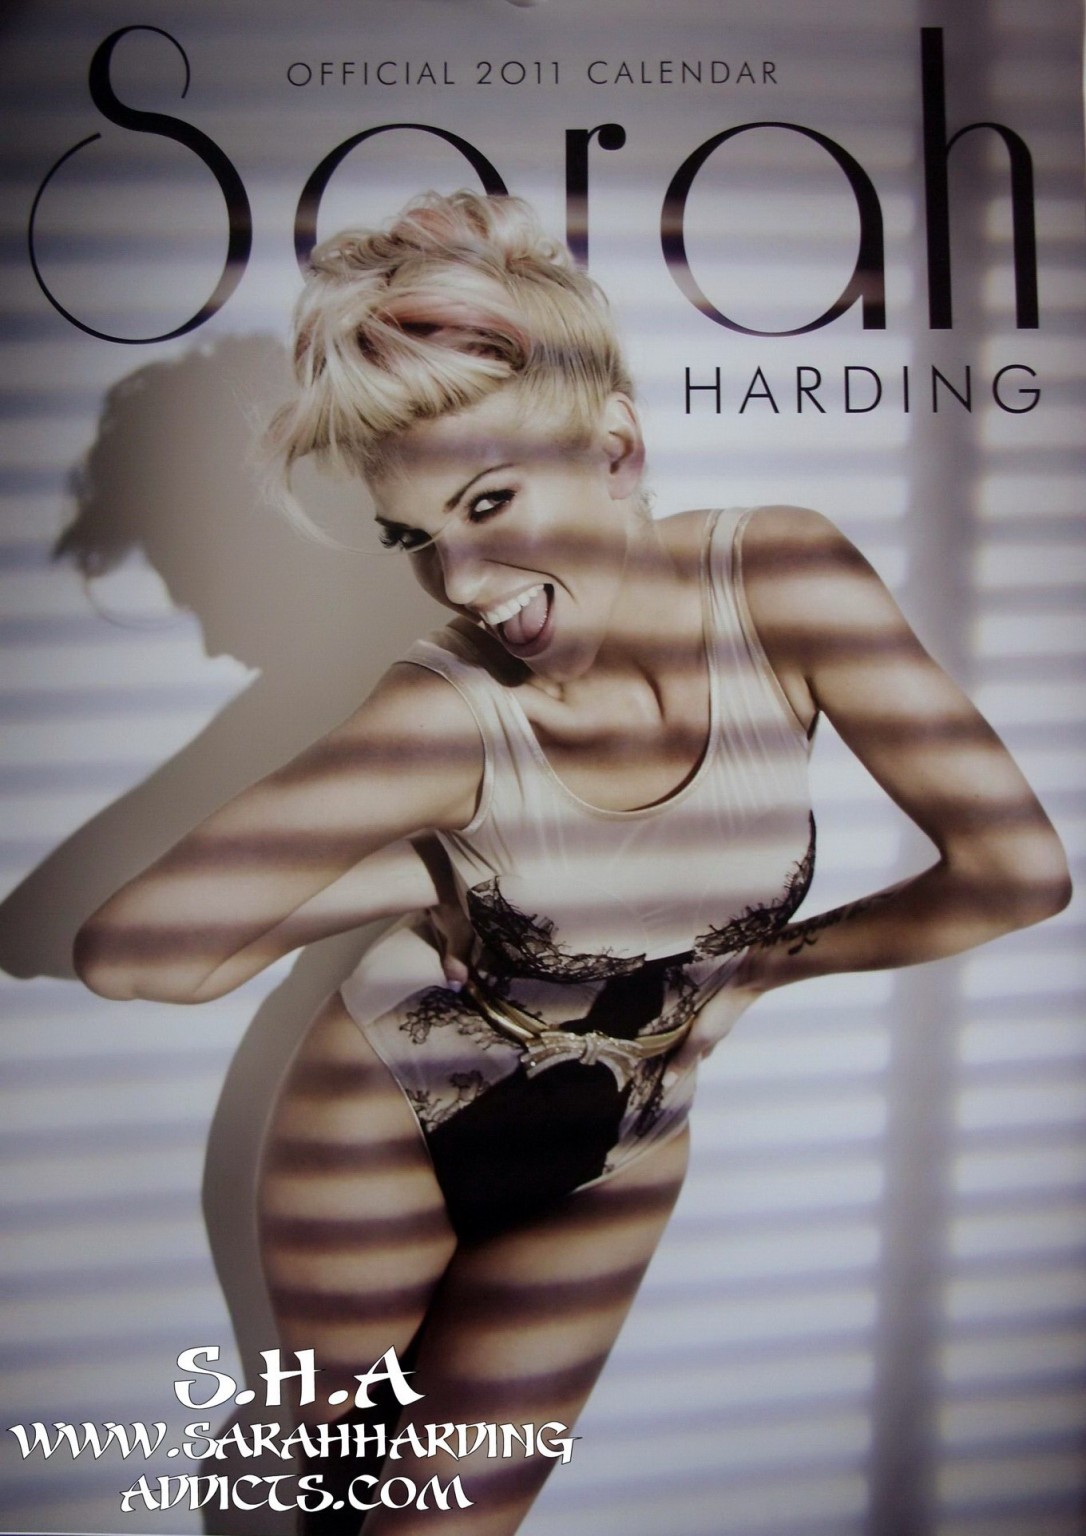 Sarah Harding nue en lingerie pour son calendrier officiel 2011
 #75332438